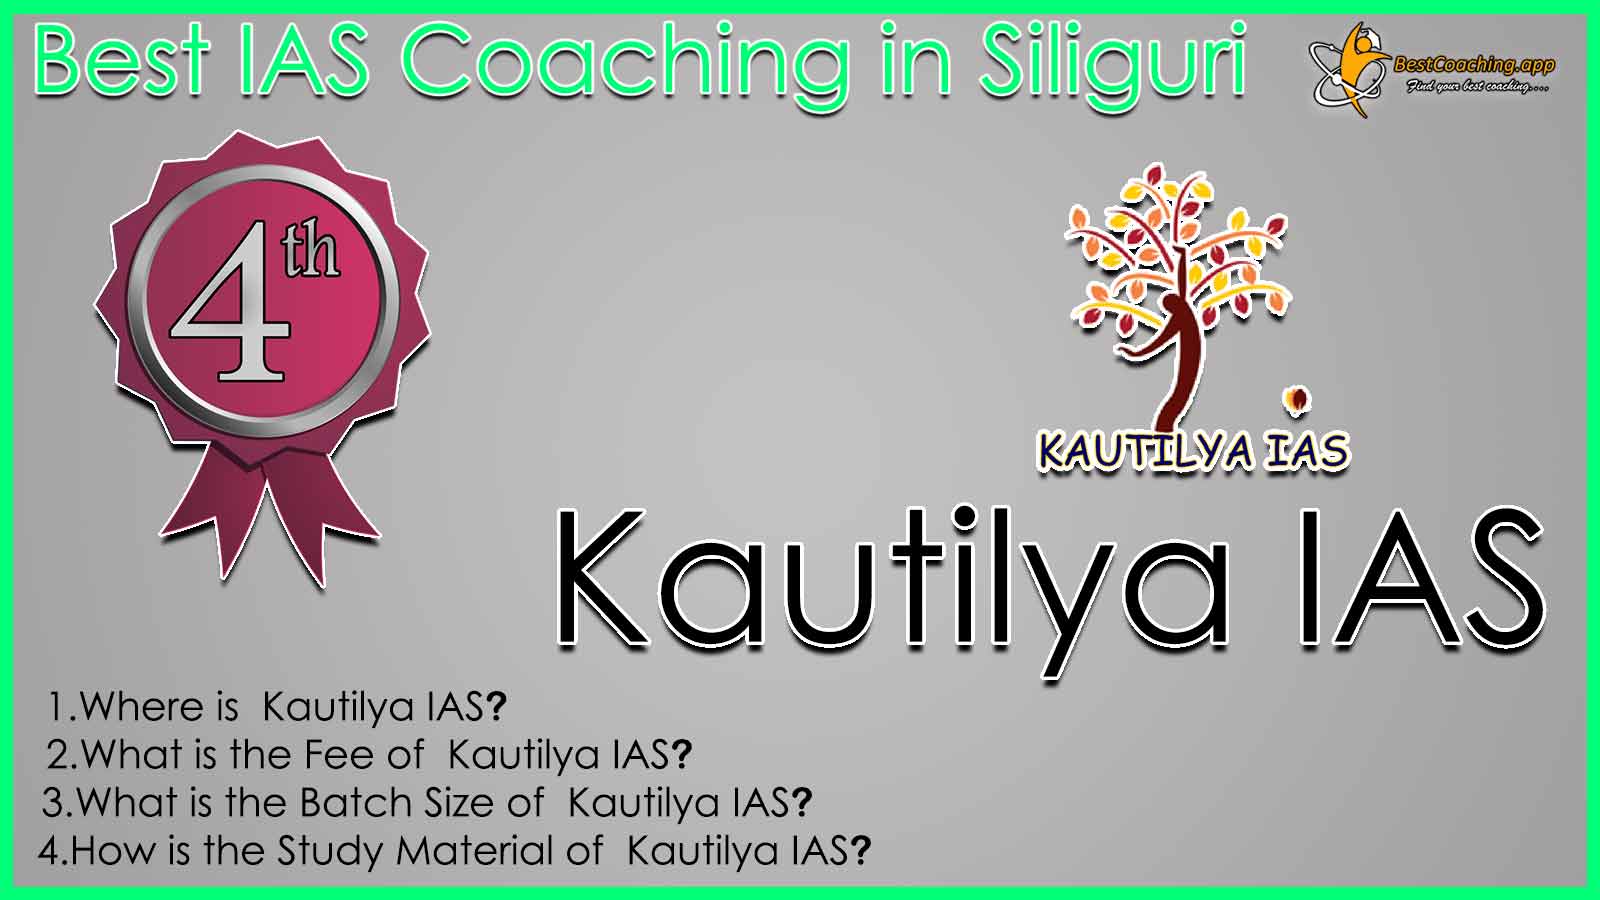 Best upsc Coaching Institutes Siliguri